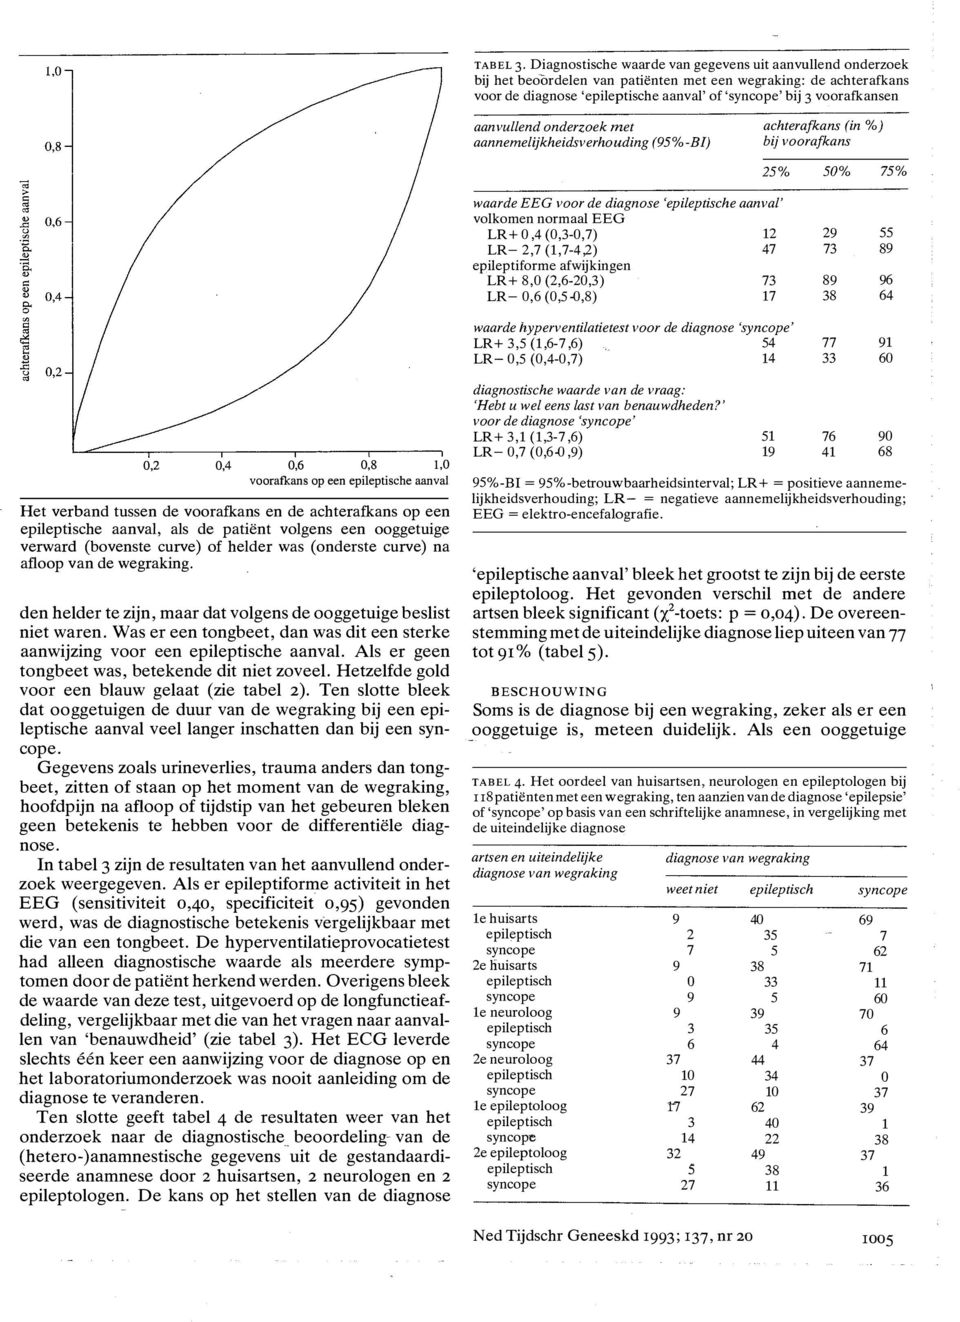 aanvullend onderzoek met aannemelijkheidsverhouding (95%-BI) achterafkans (in %) bij voorafkans 25% waarde EEG voor de diagnose 'epileptische aanval' volkomen normaal EEG LR+ 0,4 (0,3-0,7) 2 LR- 2,7